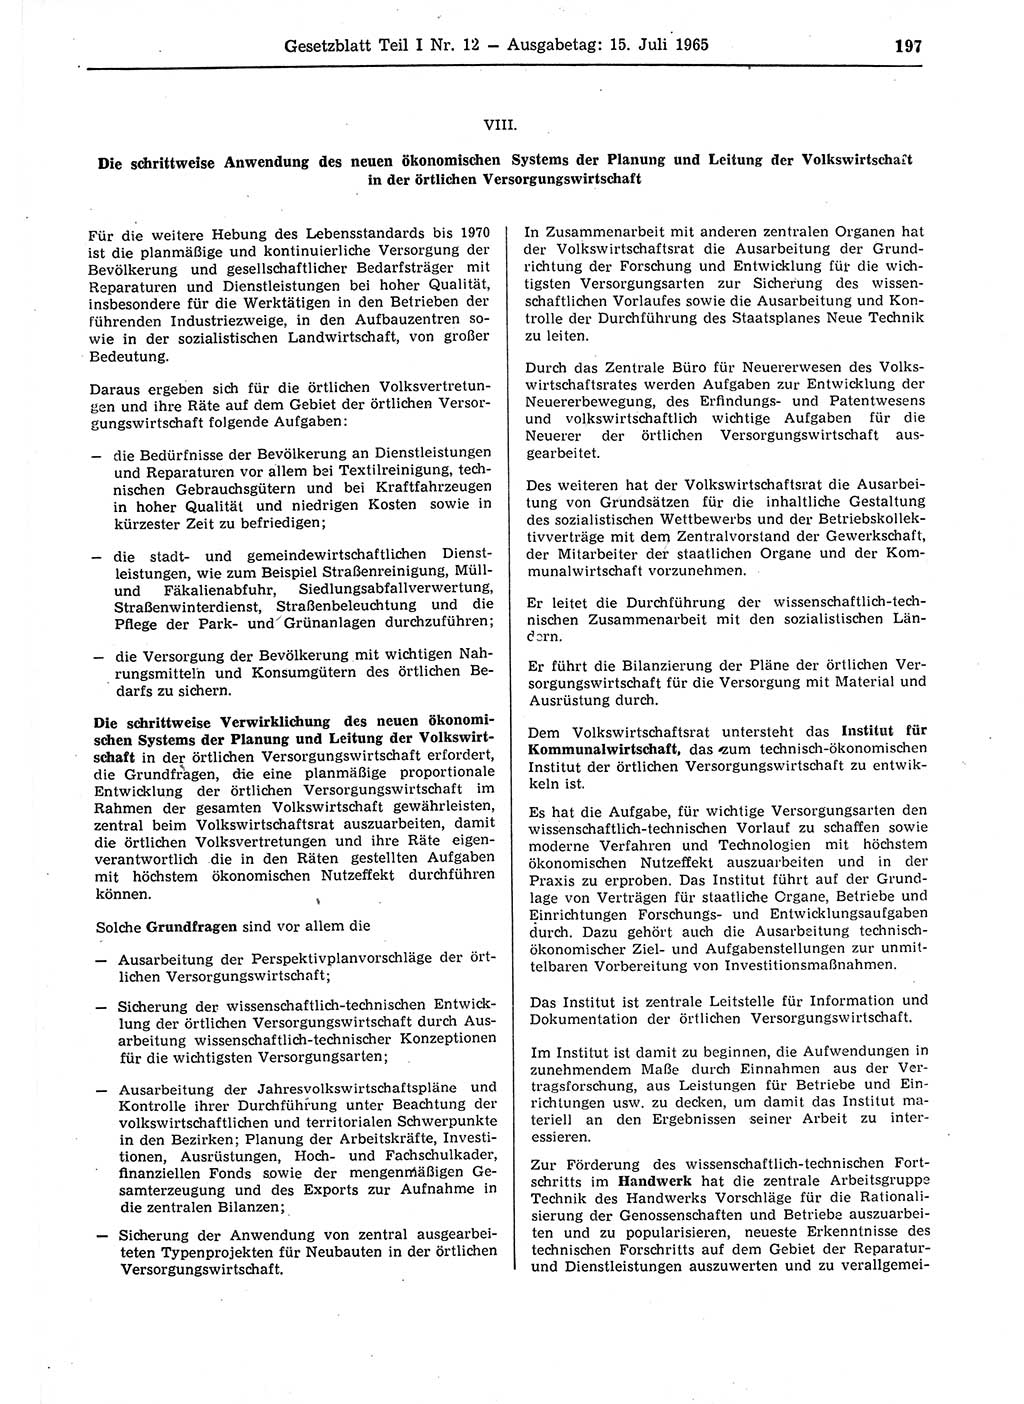 Gesetzblatt (GBl.) der Deutschen Demokratischen Republik (DDR) Teil Ⅰ 1965, Seite 197 (GBl. DDR Ⅰ 1965, S. 197)